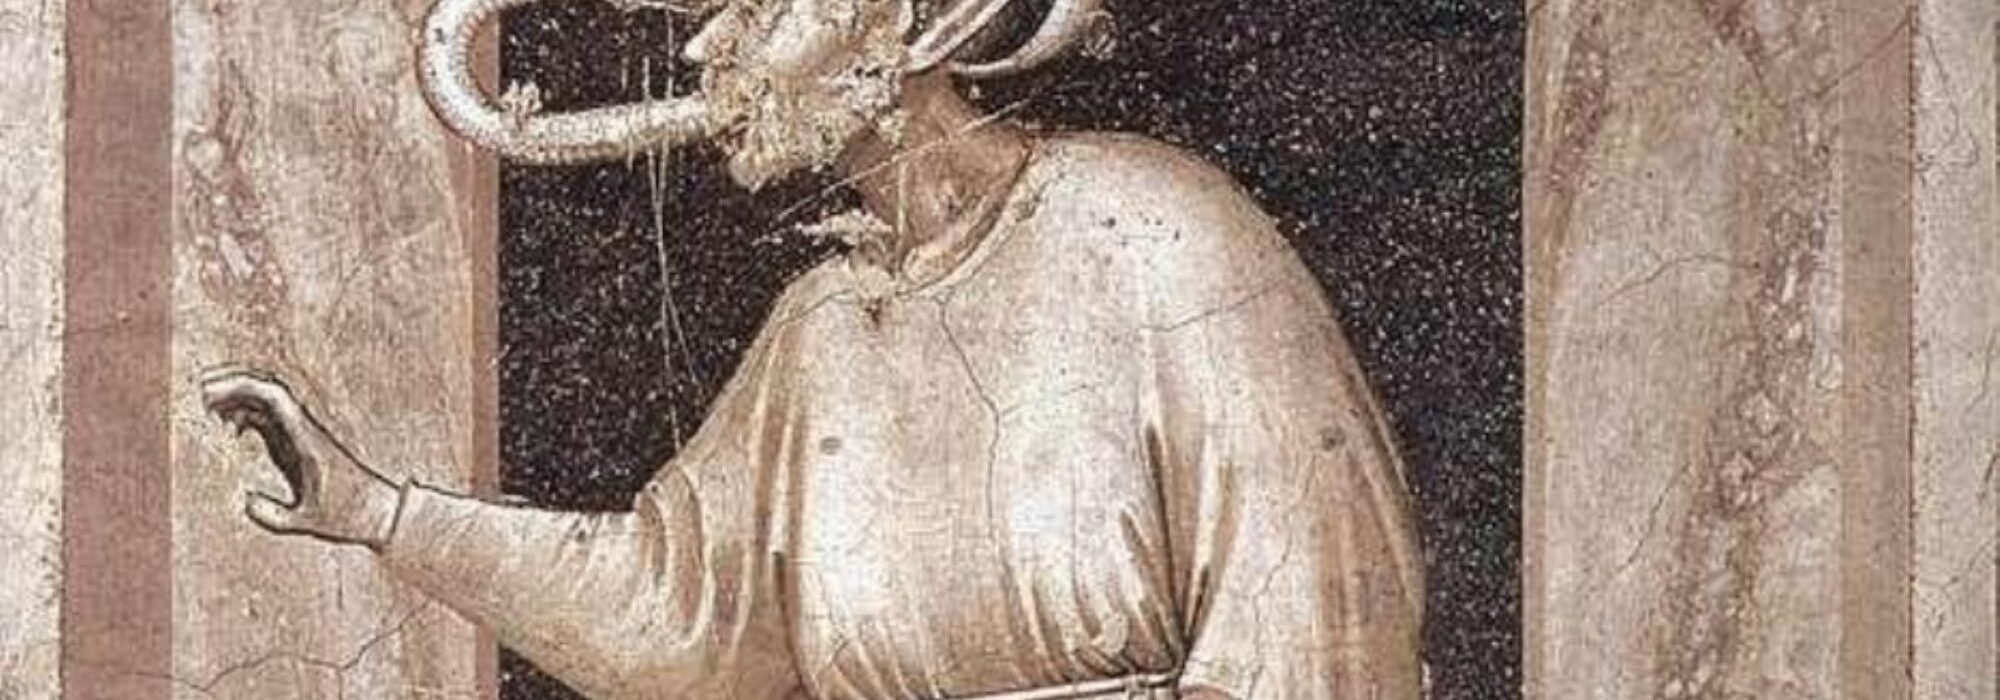 Imagem: Os Sete Vícios - Inveja (Giotto di Bondone, 1304/1306, detalhe)